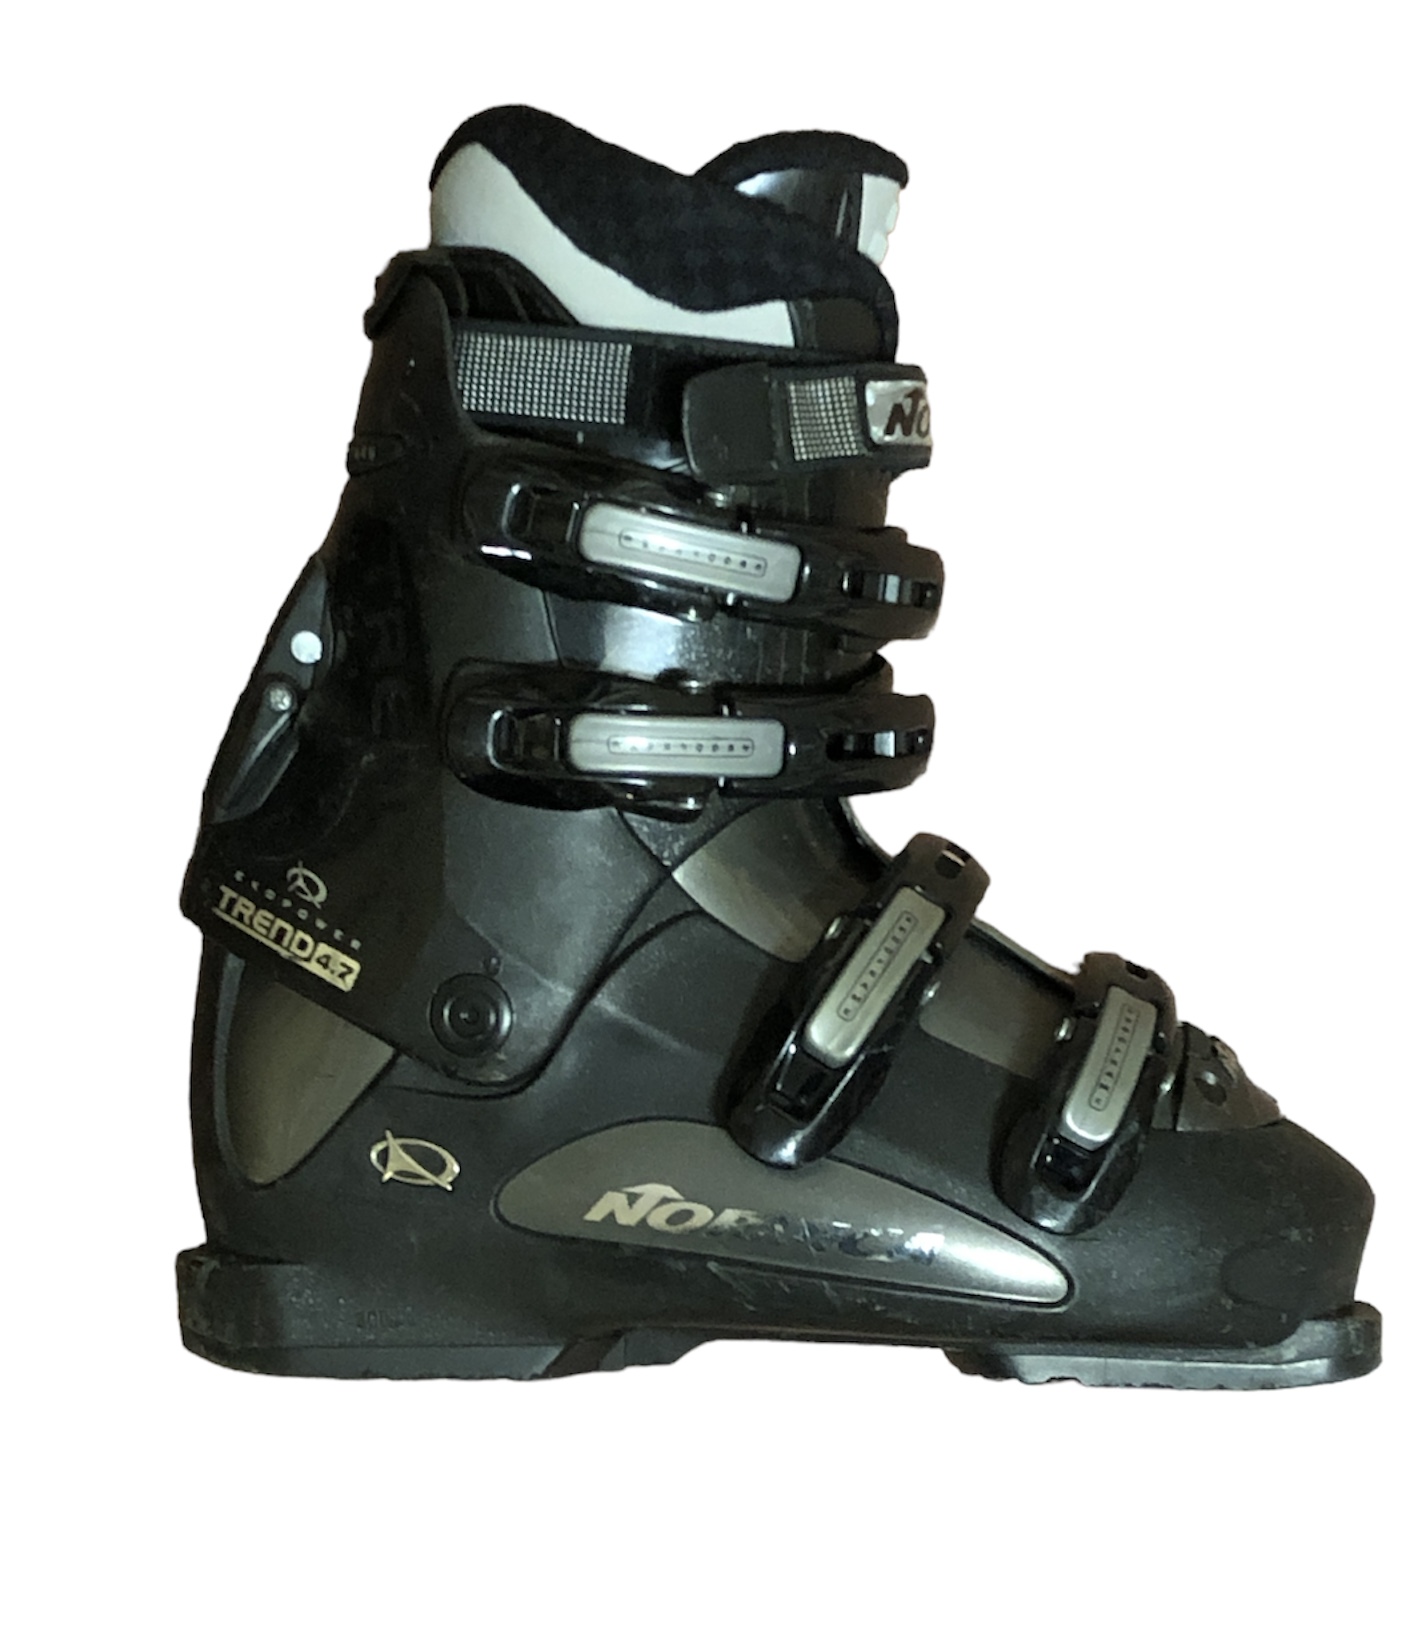 Używane buty narciarskie Nordica 25,0 / 300mm rozmiar 39 :: Sklep Sportowy  - outlet sportowy, koncówki kolekcji, wyprzedaże, narty, deski, wiązania,  sprzet narciarski, buty sportowe